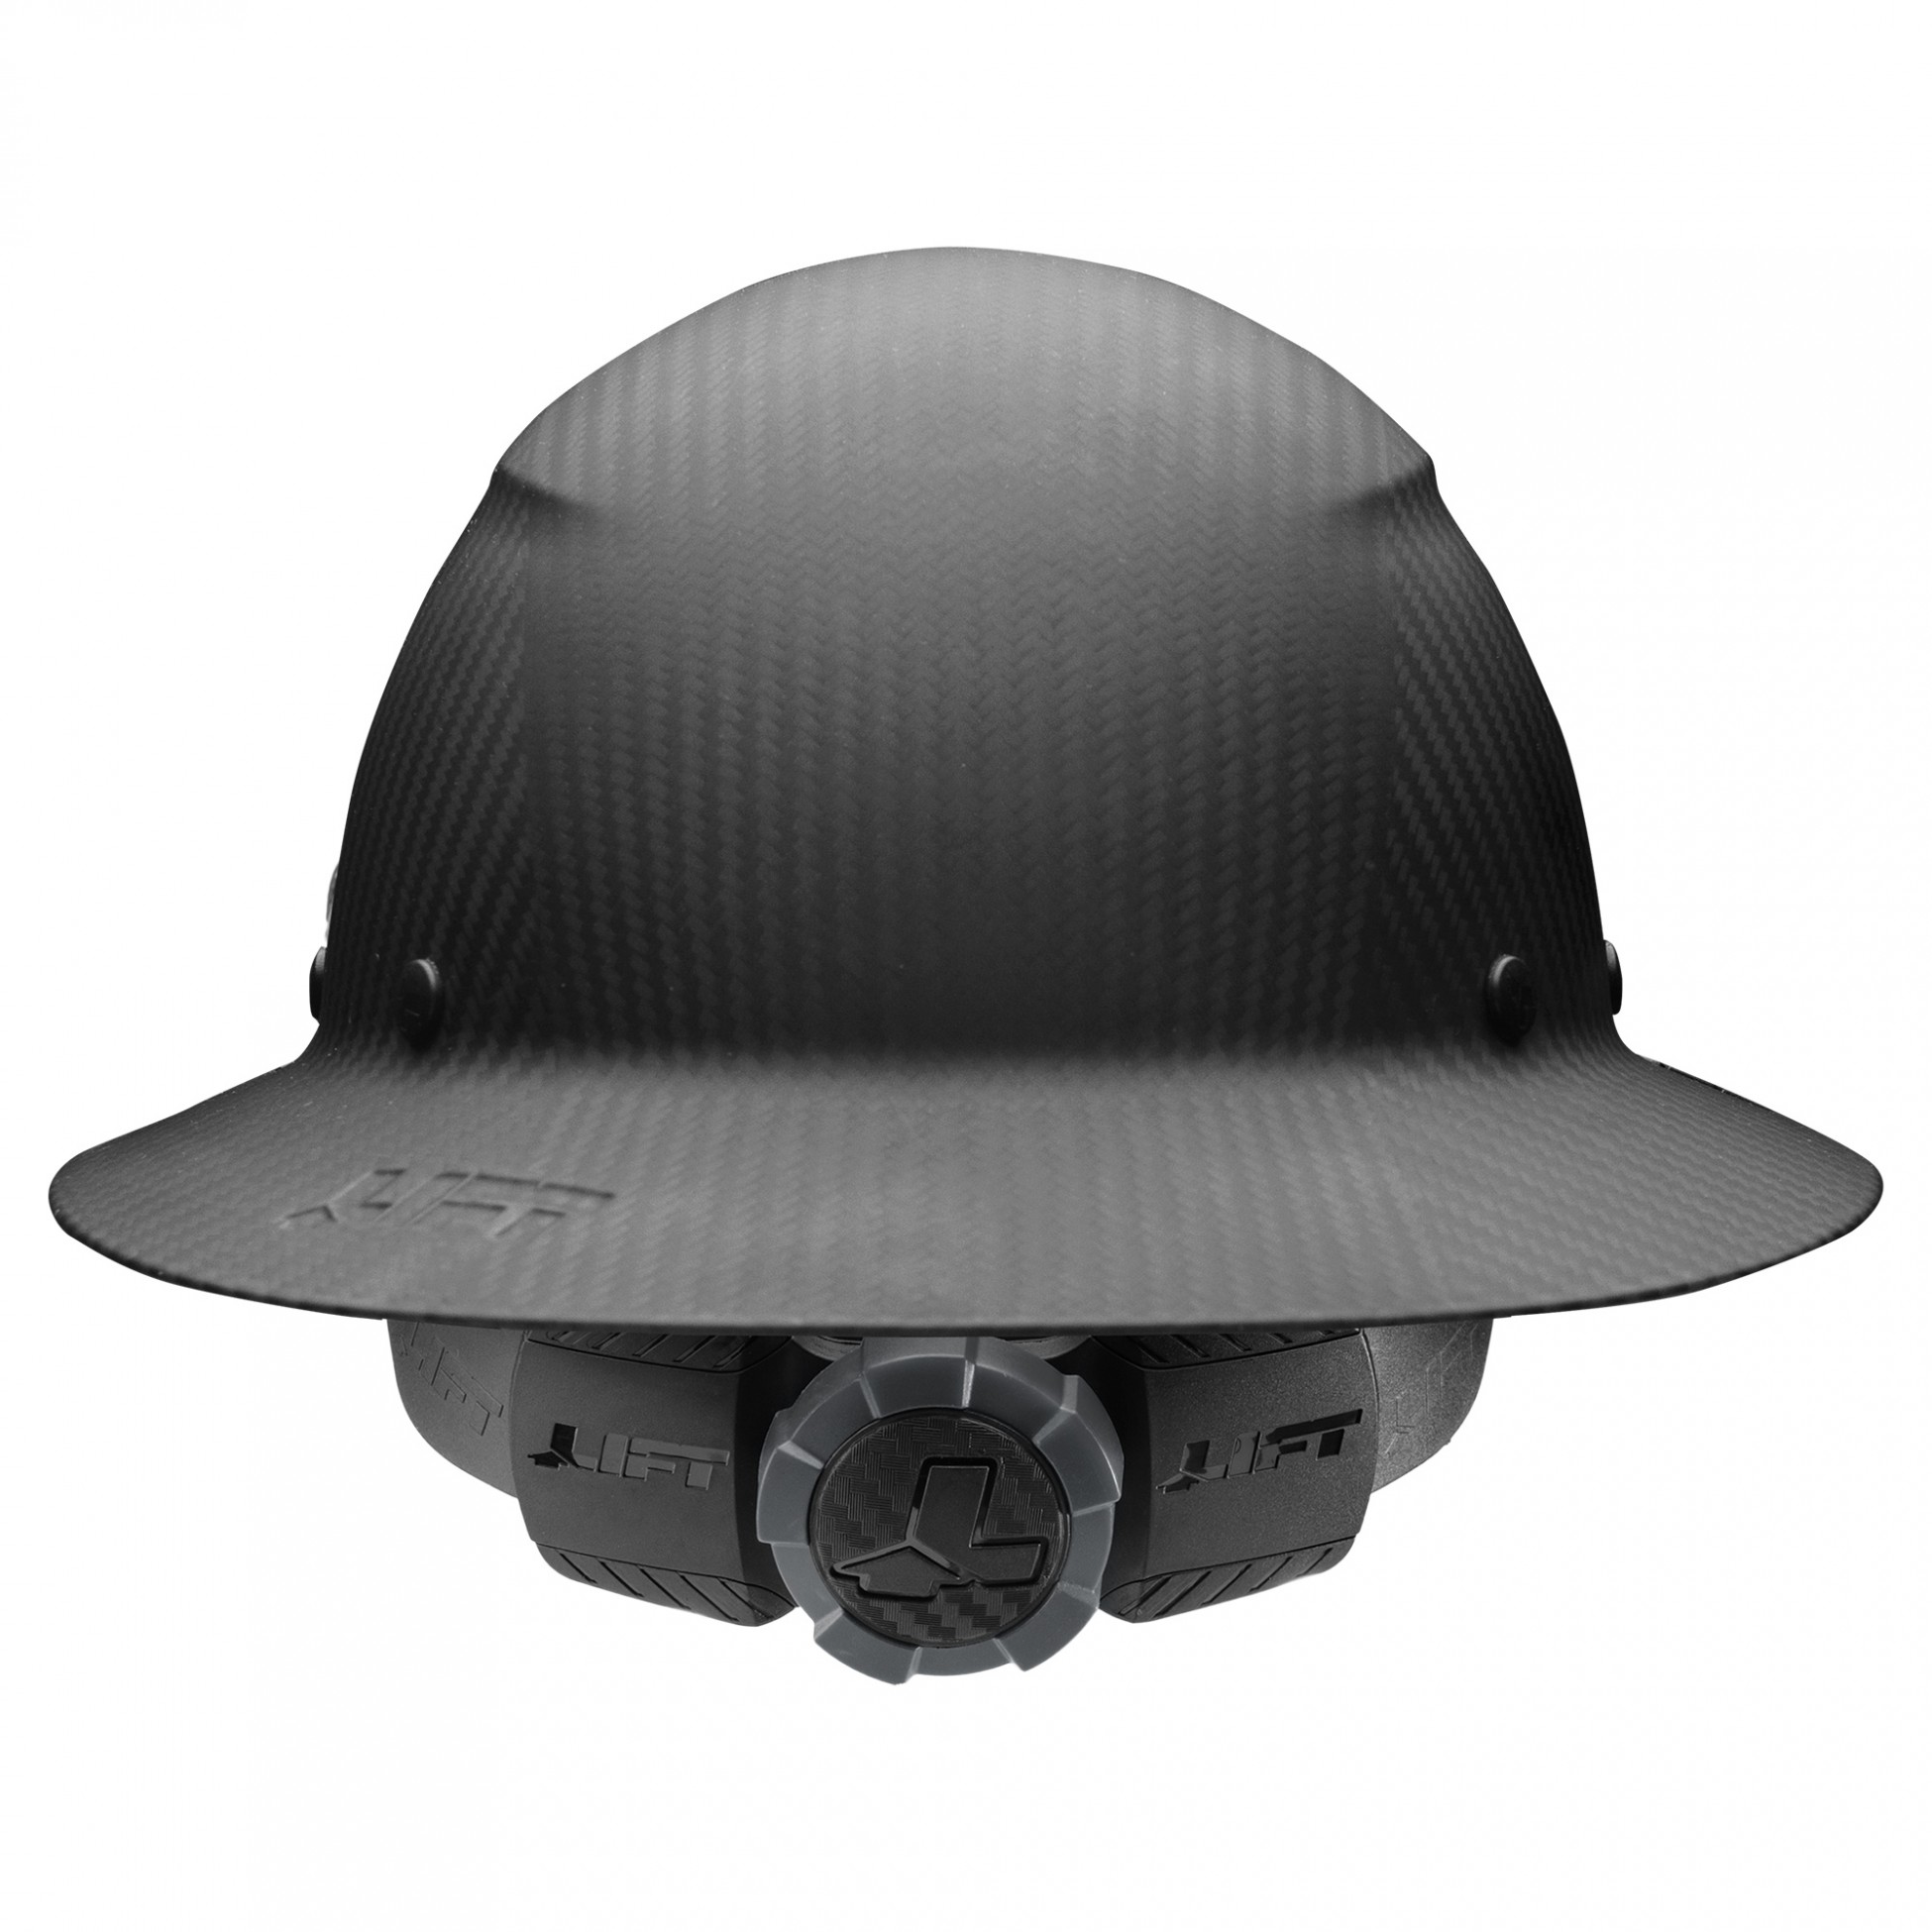 DAX "REAL" Carbon Fiber "MATTE BLACK" Full Brim Hard Hat Ratchet Suspension 